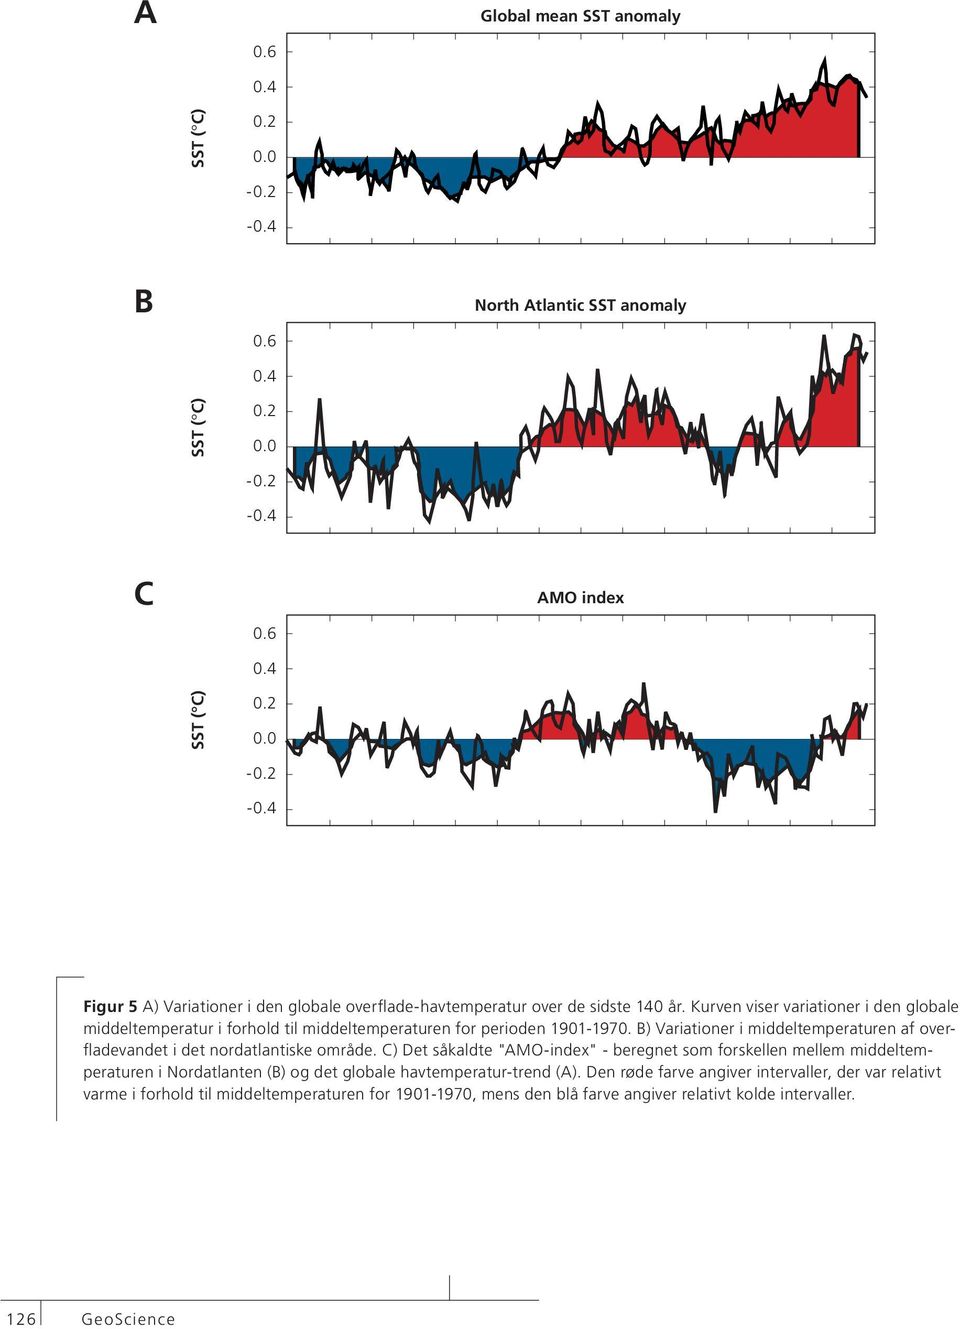 B) Variationer i middeltemperaturen af overfladevandet i det nordatlantiske område.